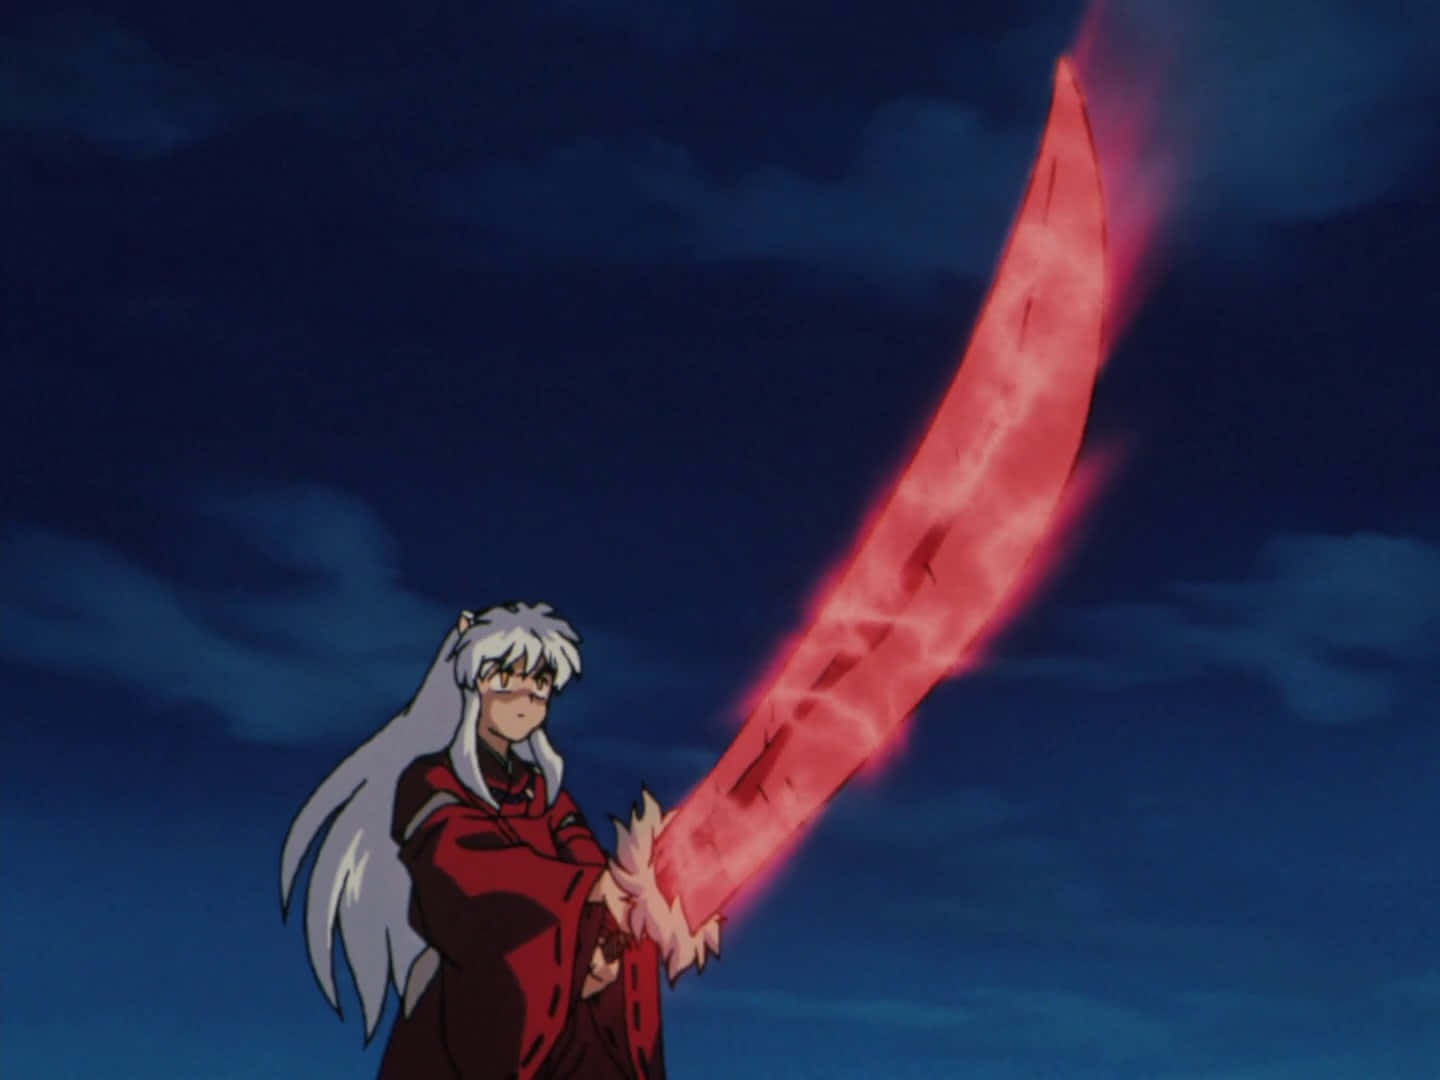 Inuyasha wielding the legendary Tessaiga sword Wallpaper